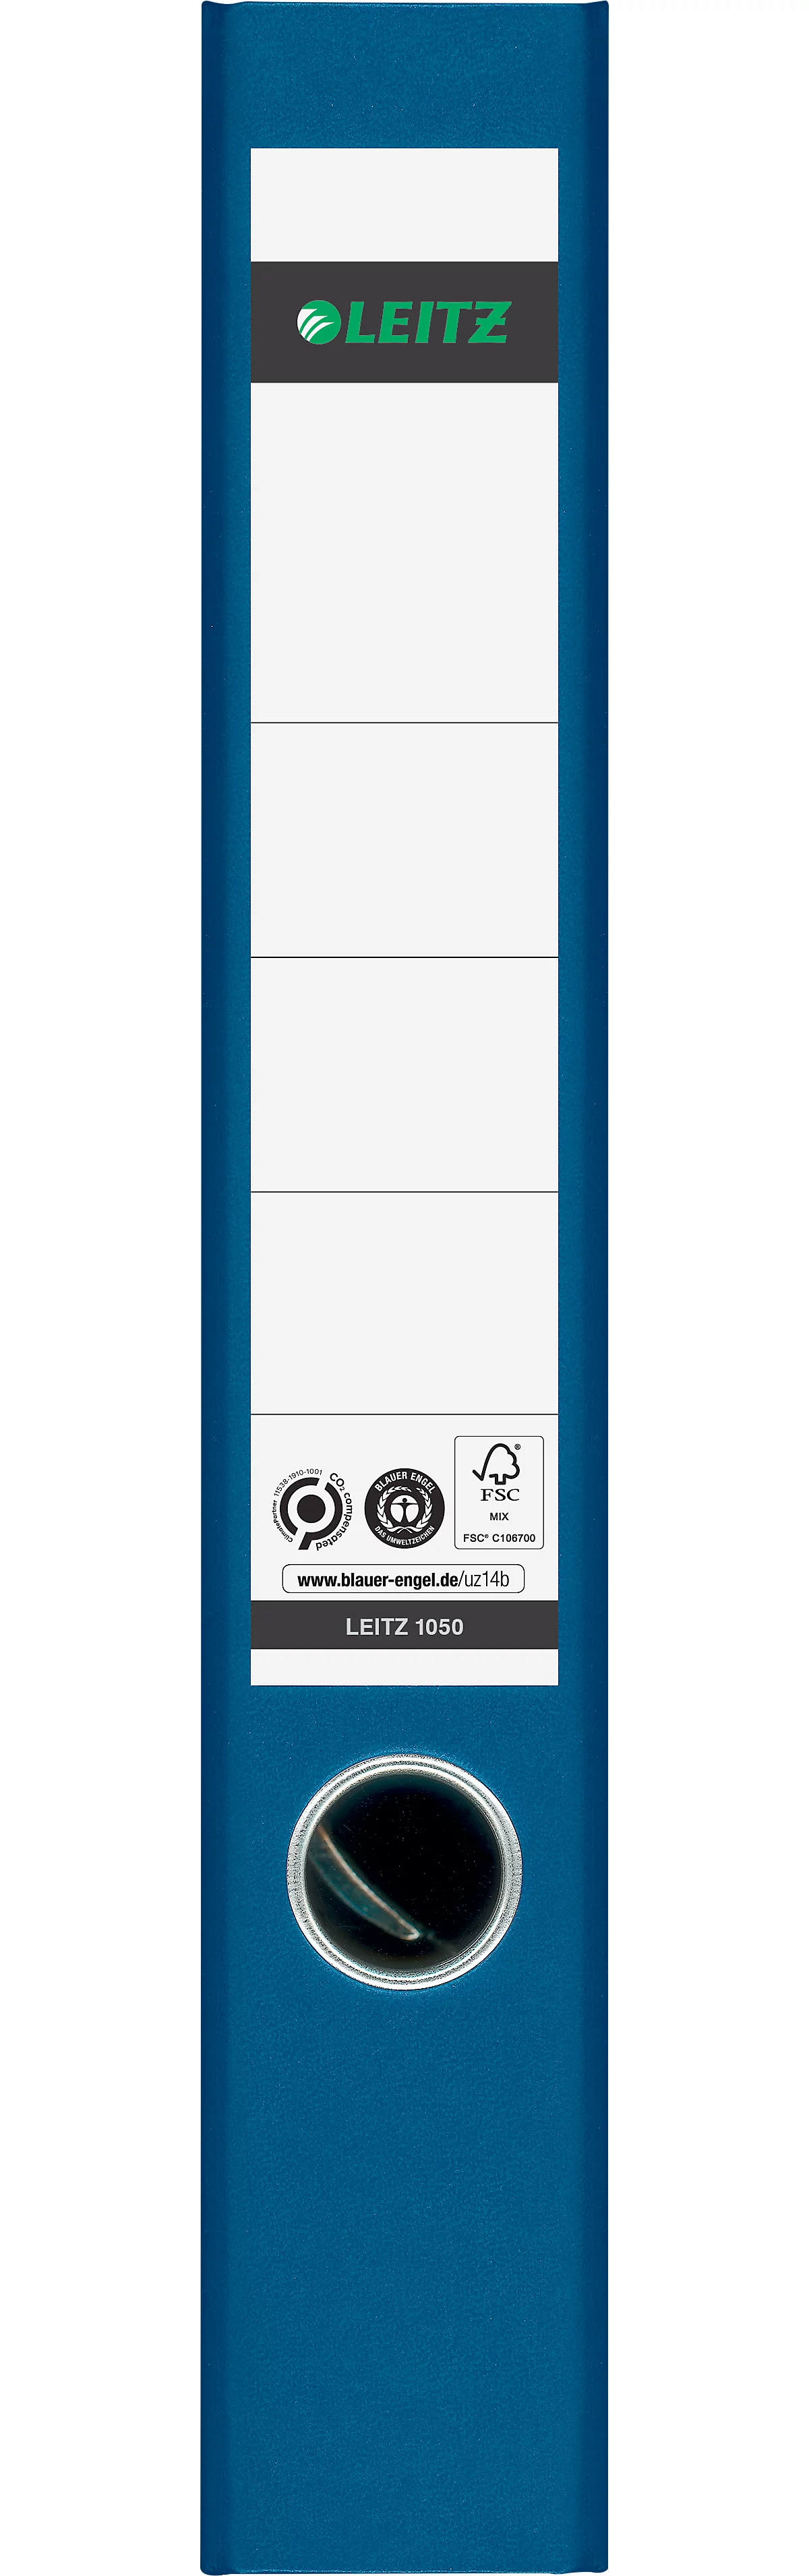 LEITZ® Ordner 1050, DIN A4, Rückenbreite 52 mm, Griffloch, geklebtes Rückenschild, klimaneutral, Hartpappe, 20 Stück, blau